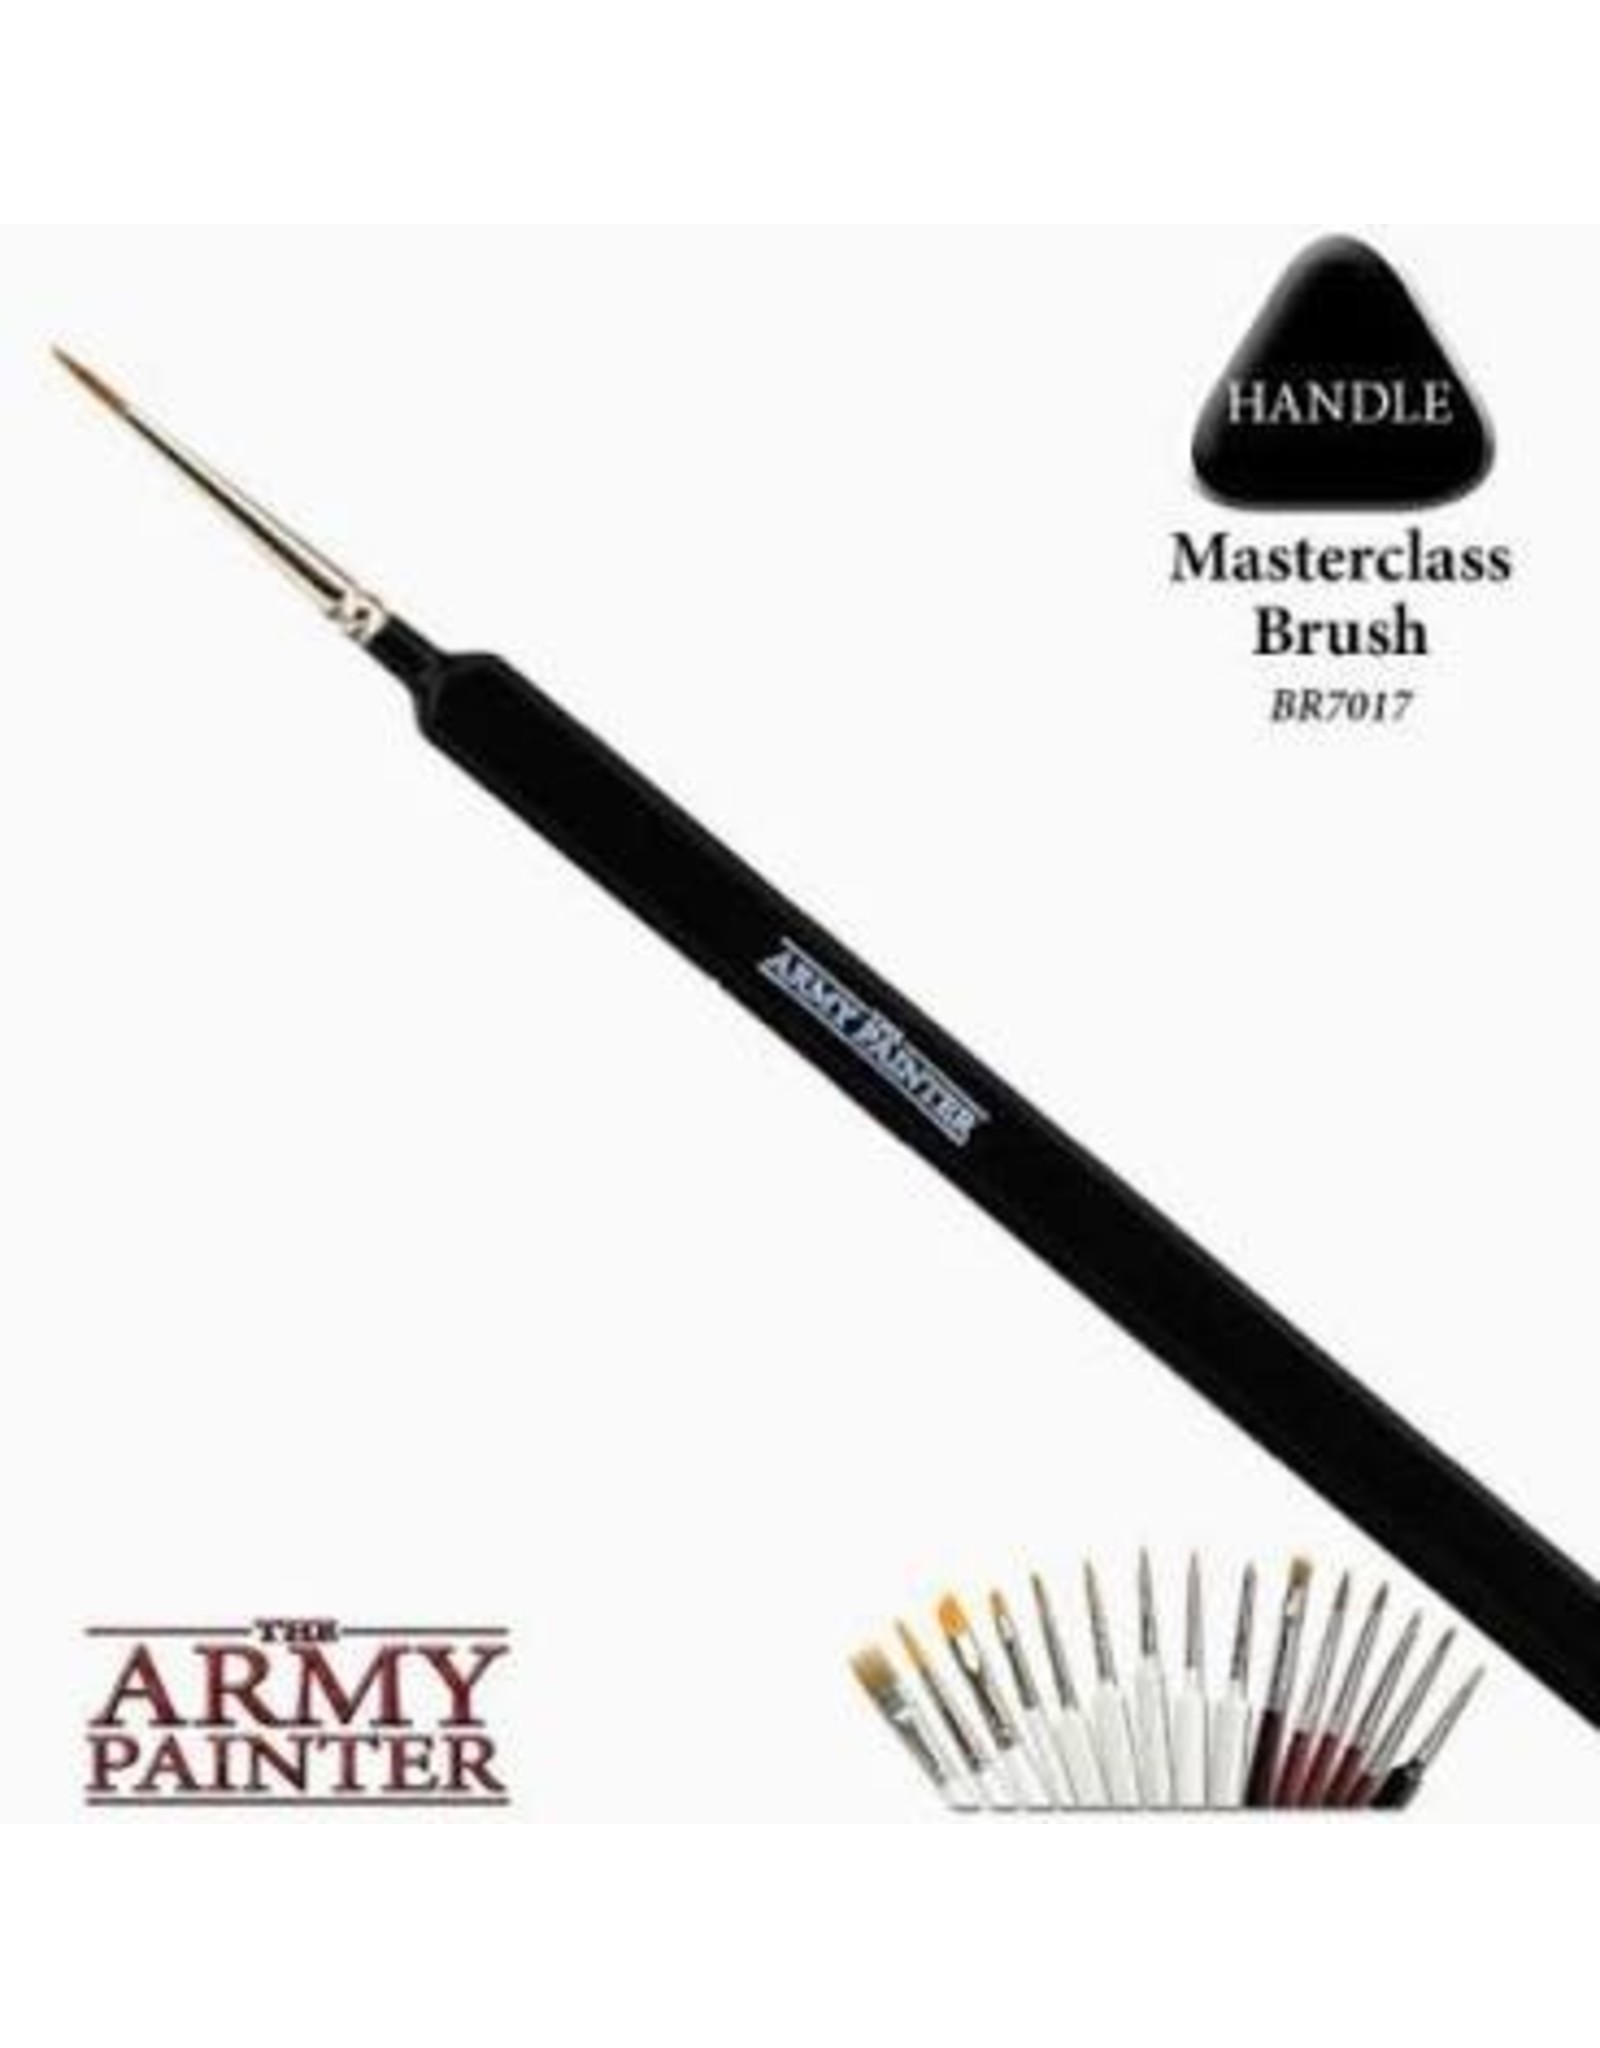 Army Painter Hobby Brush: Masterclass